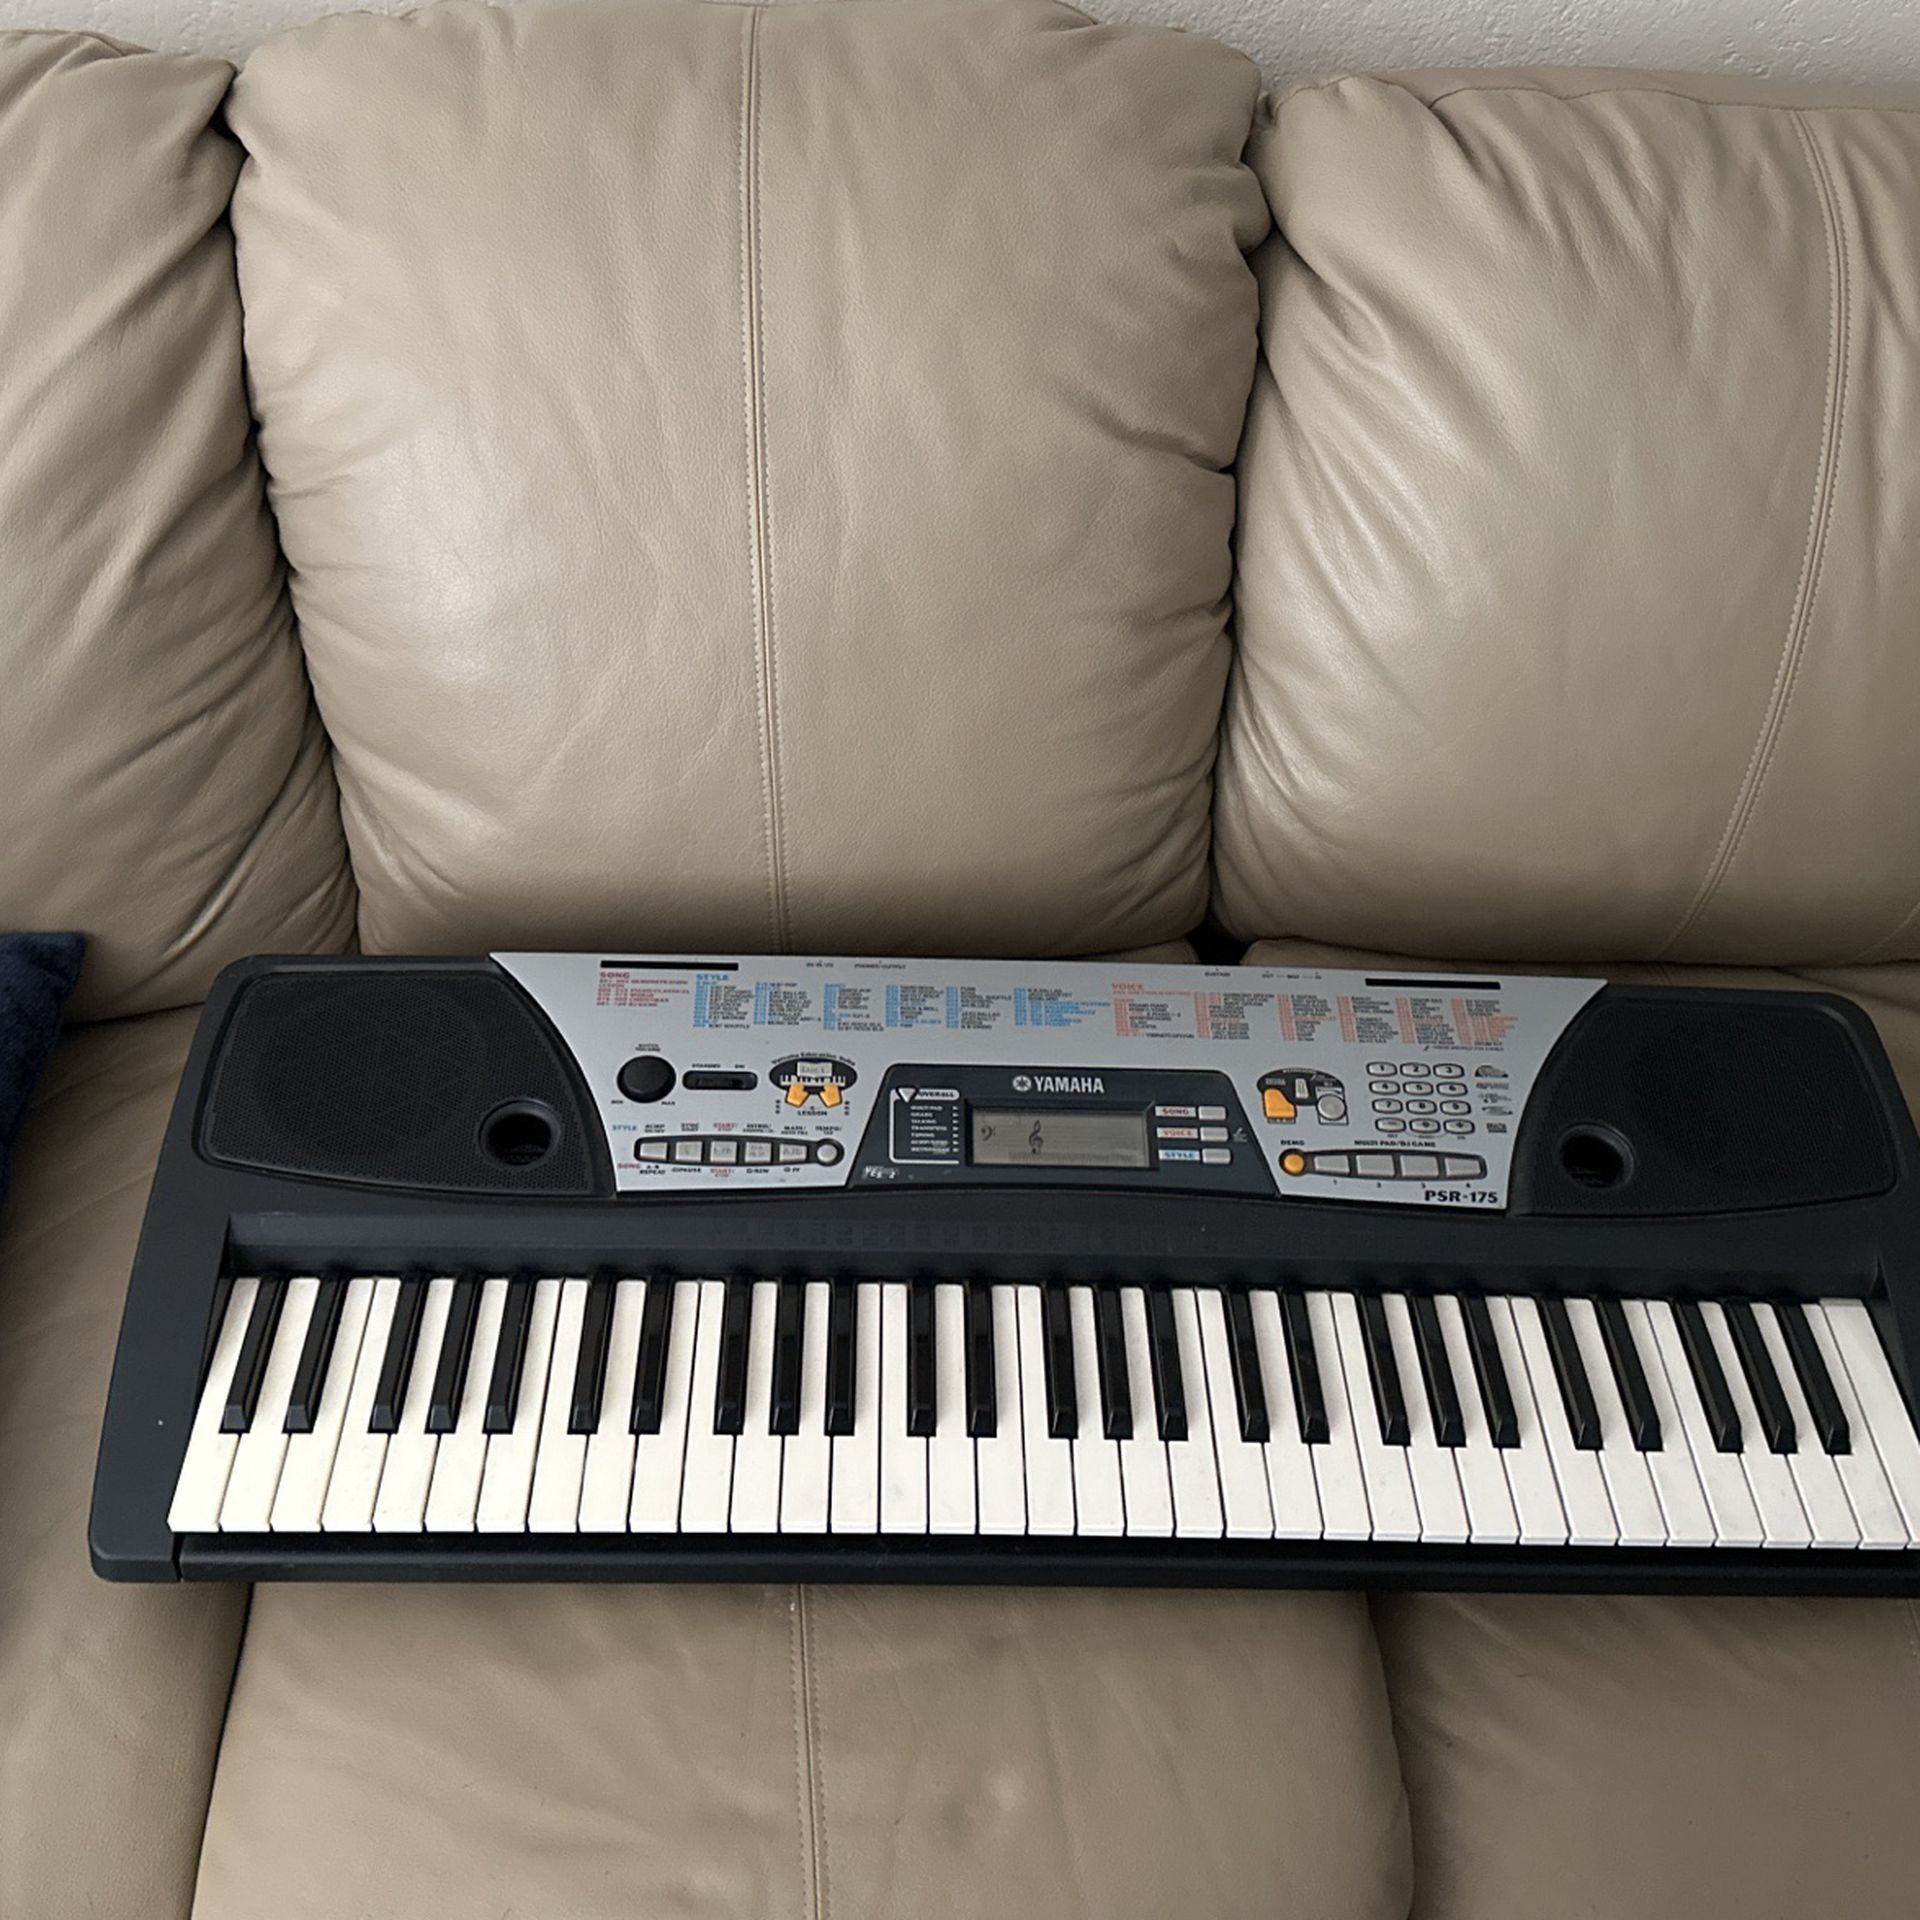 PSR-175 Piano Keyboard